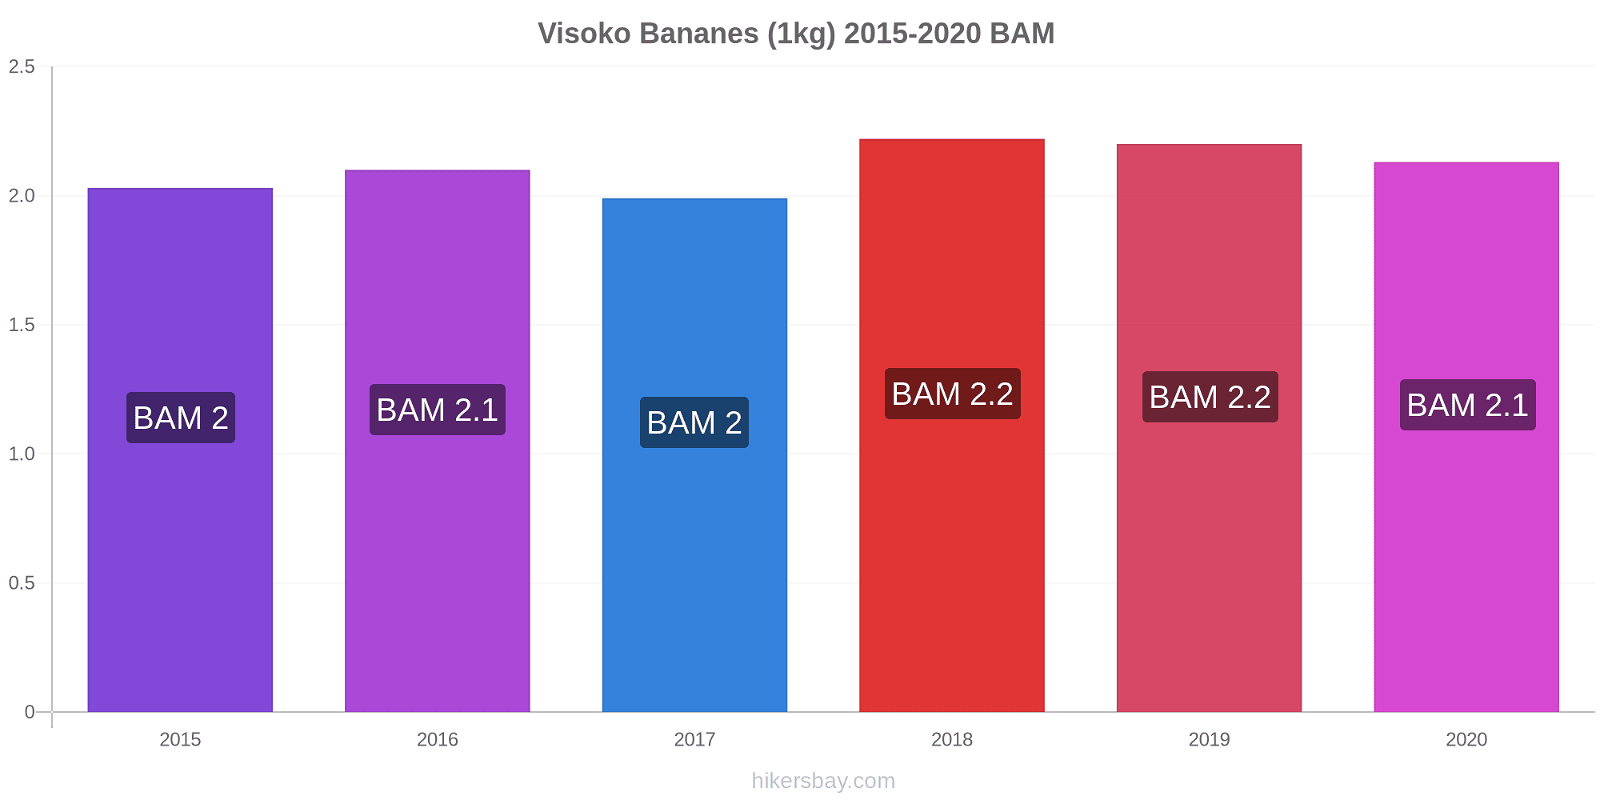 Visoko changements de prix Bananes (1kg) hikersbay.com